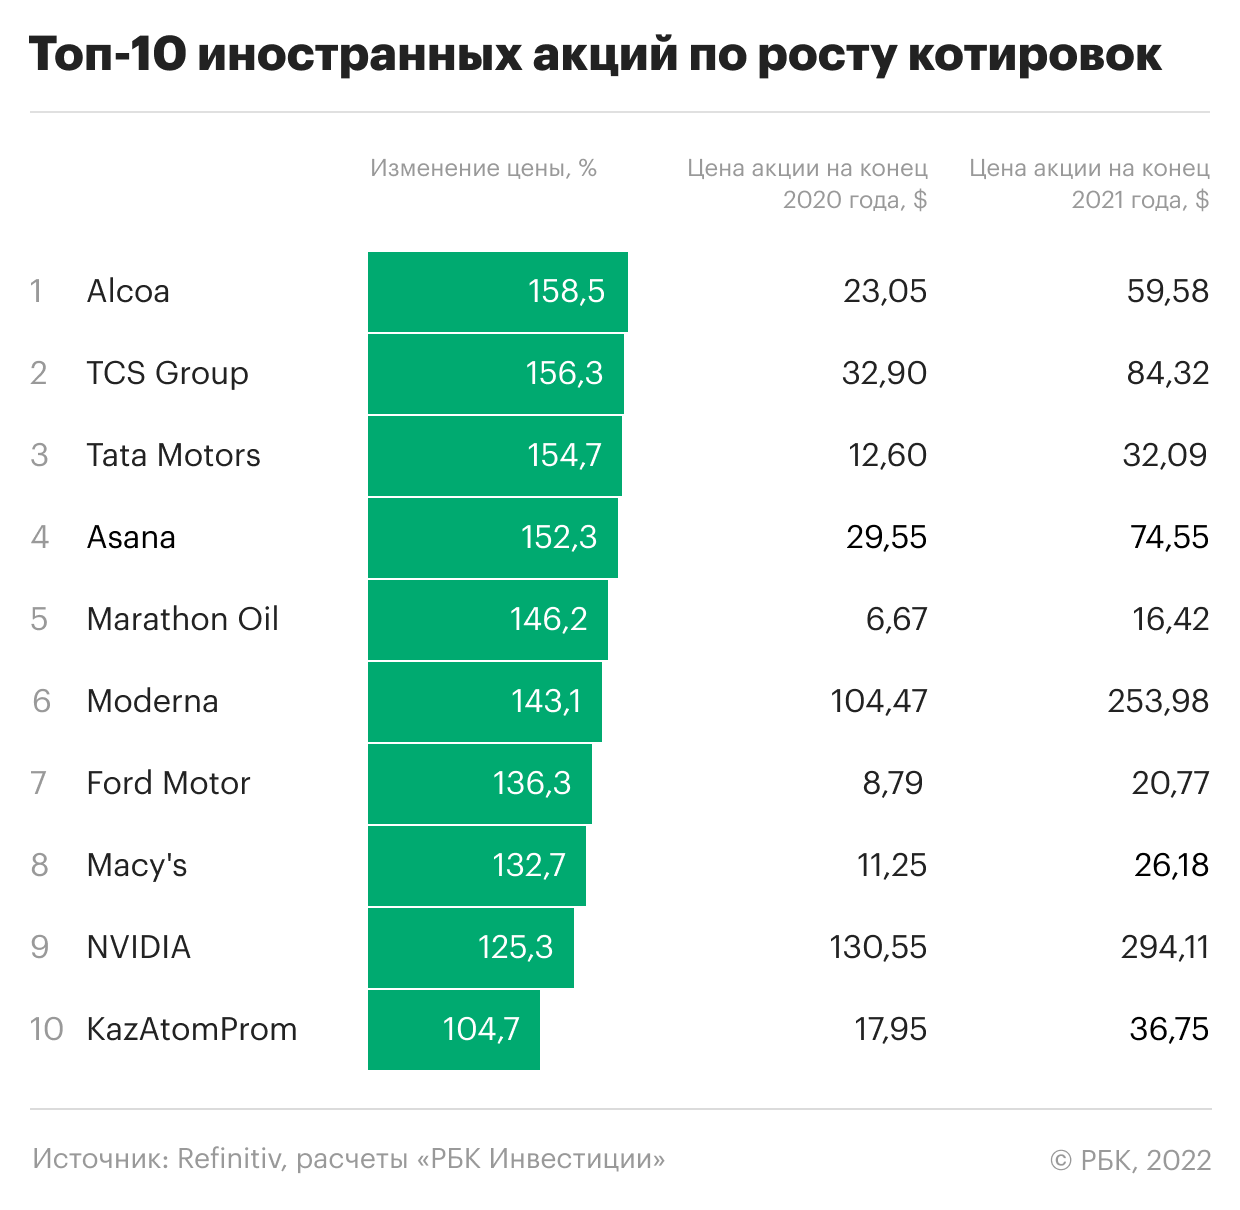 Топ-10 иностранных акций по росту котировок